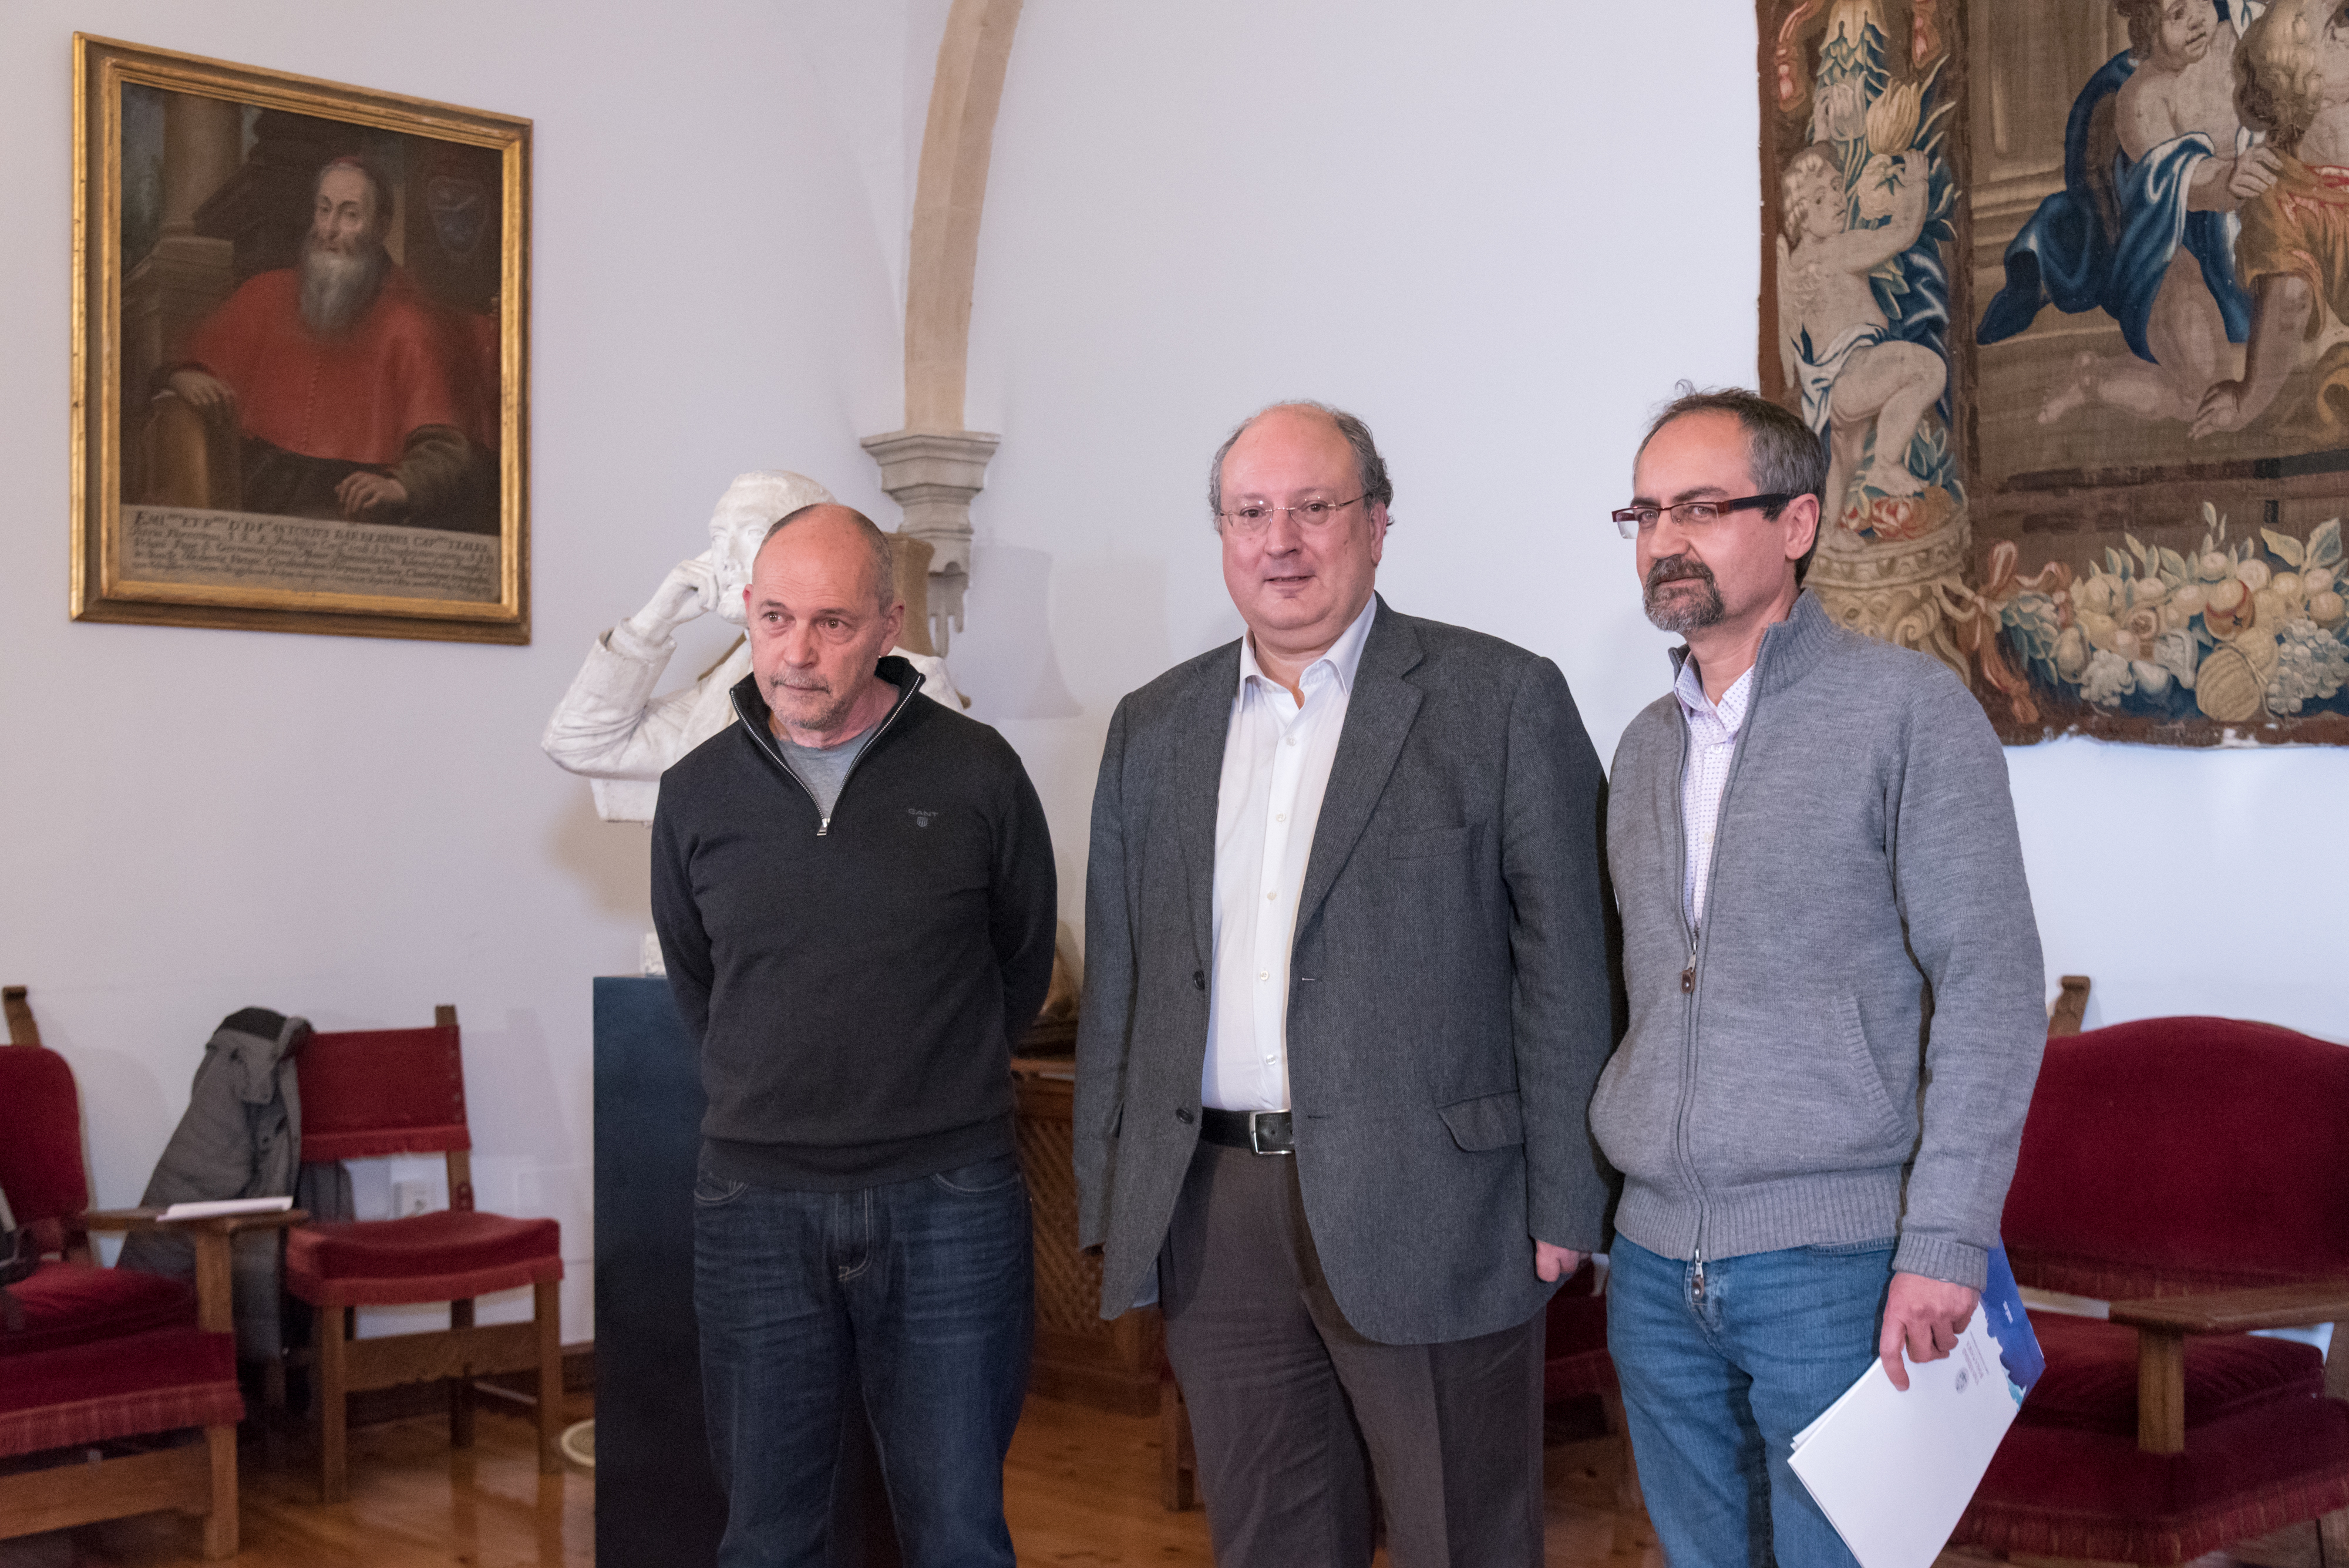 La Universidad de Salamanca apuesta por una programación cultural coordinada para combinar las propuestas extraordinarias con la oferta habitual